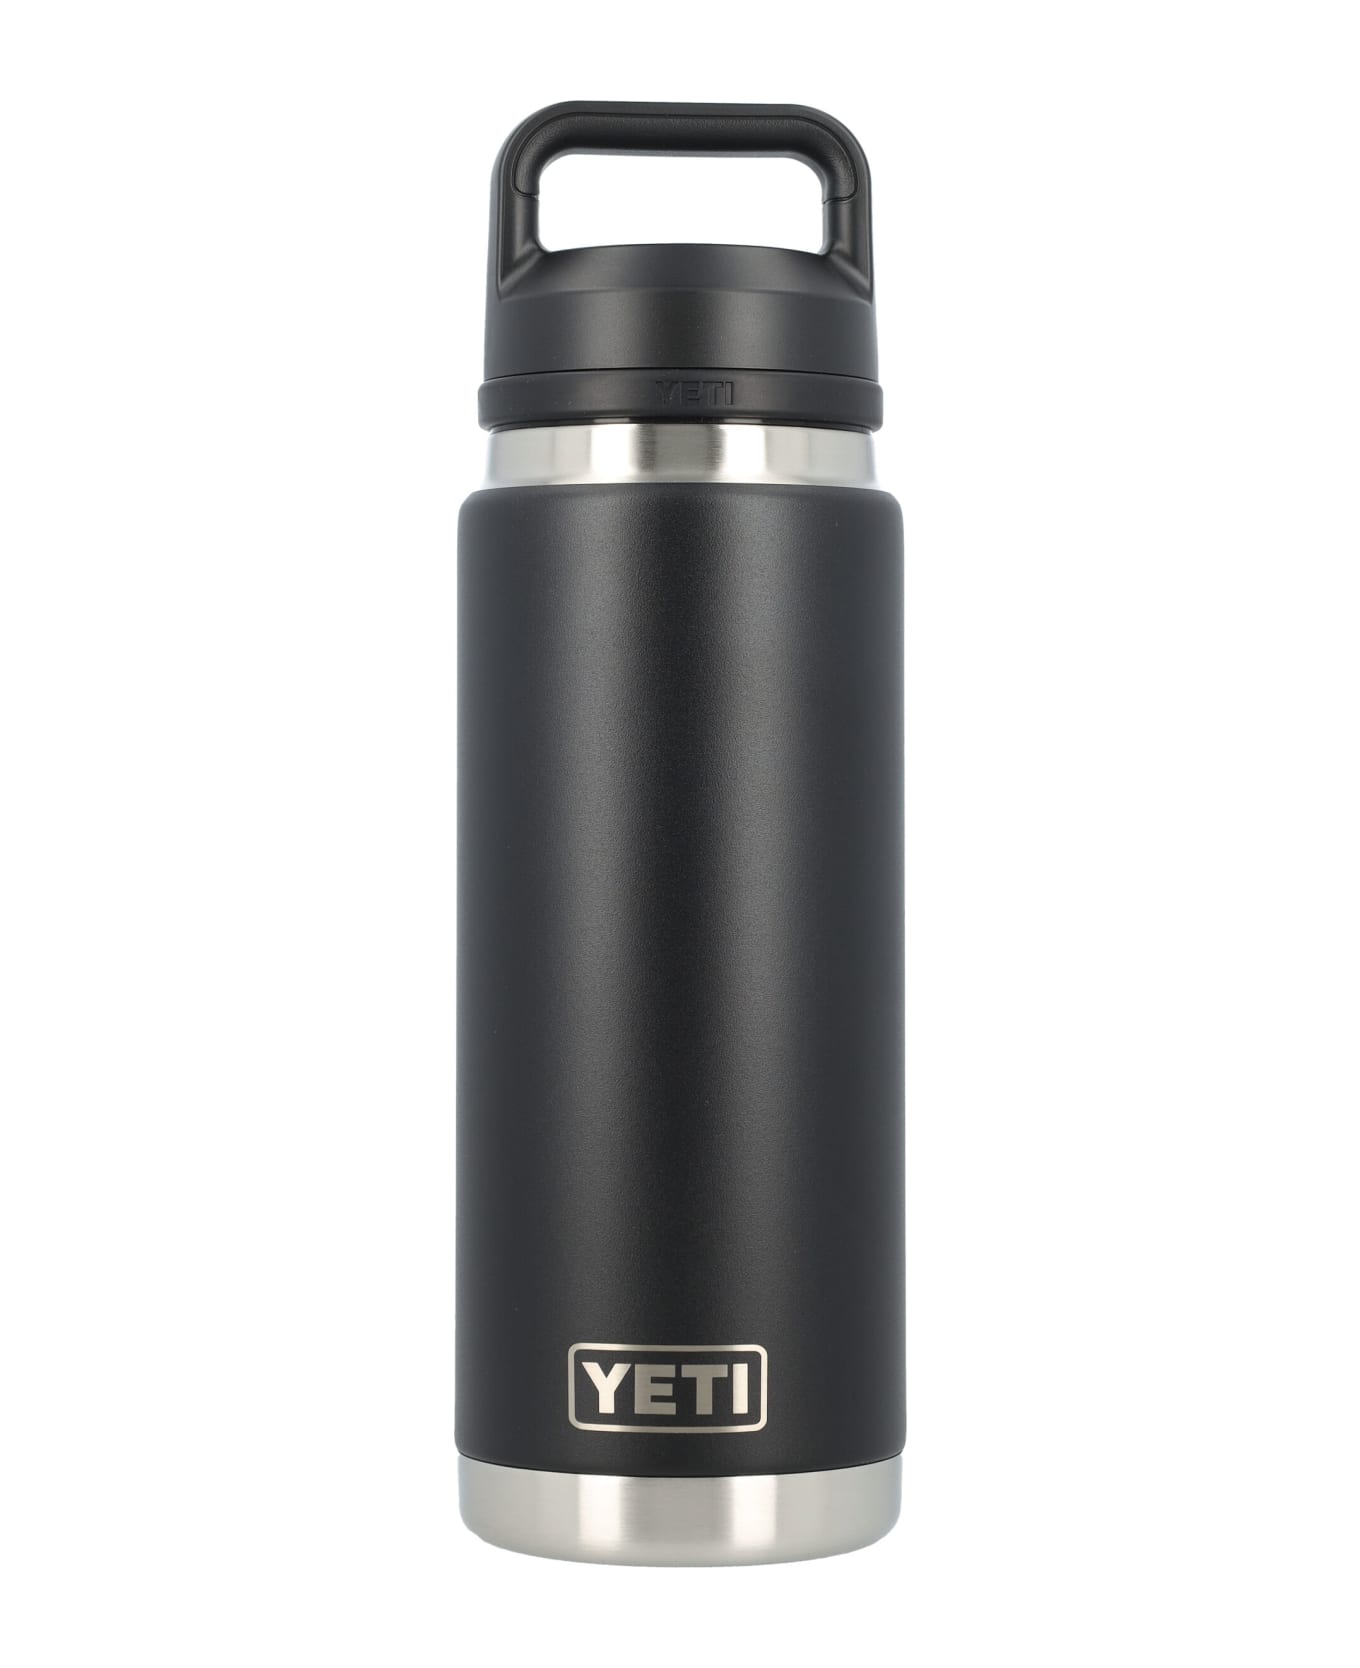 Yeti 26 Oz Water Bottle - BLACK アクセサリー